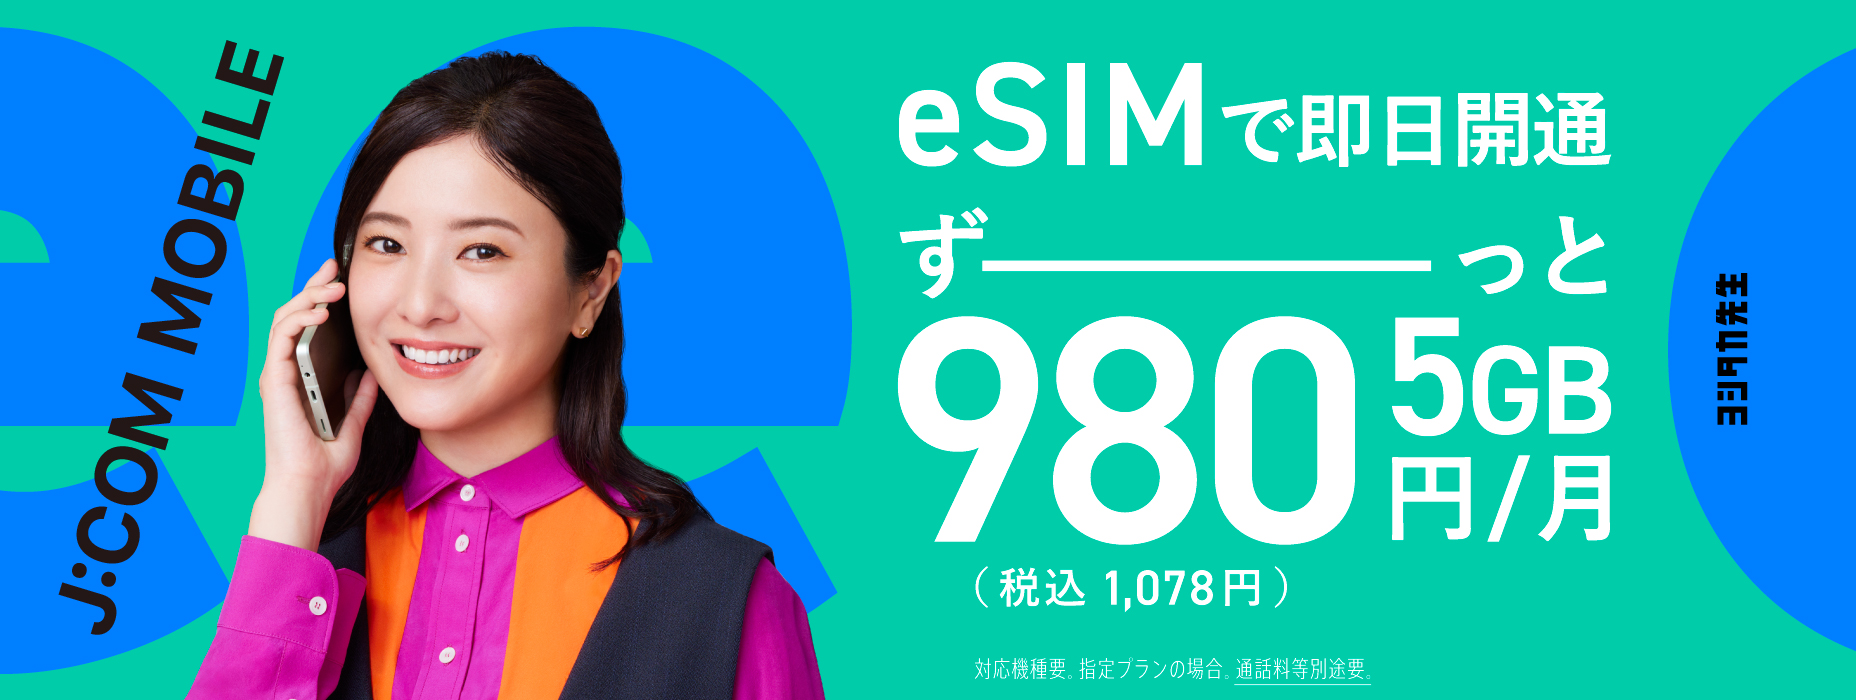 Novo eSIM! 5 GB todo o caminho 980 ienes (1.078 ienes incluindo impostos) quando os dados são aplicados